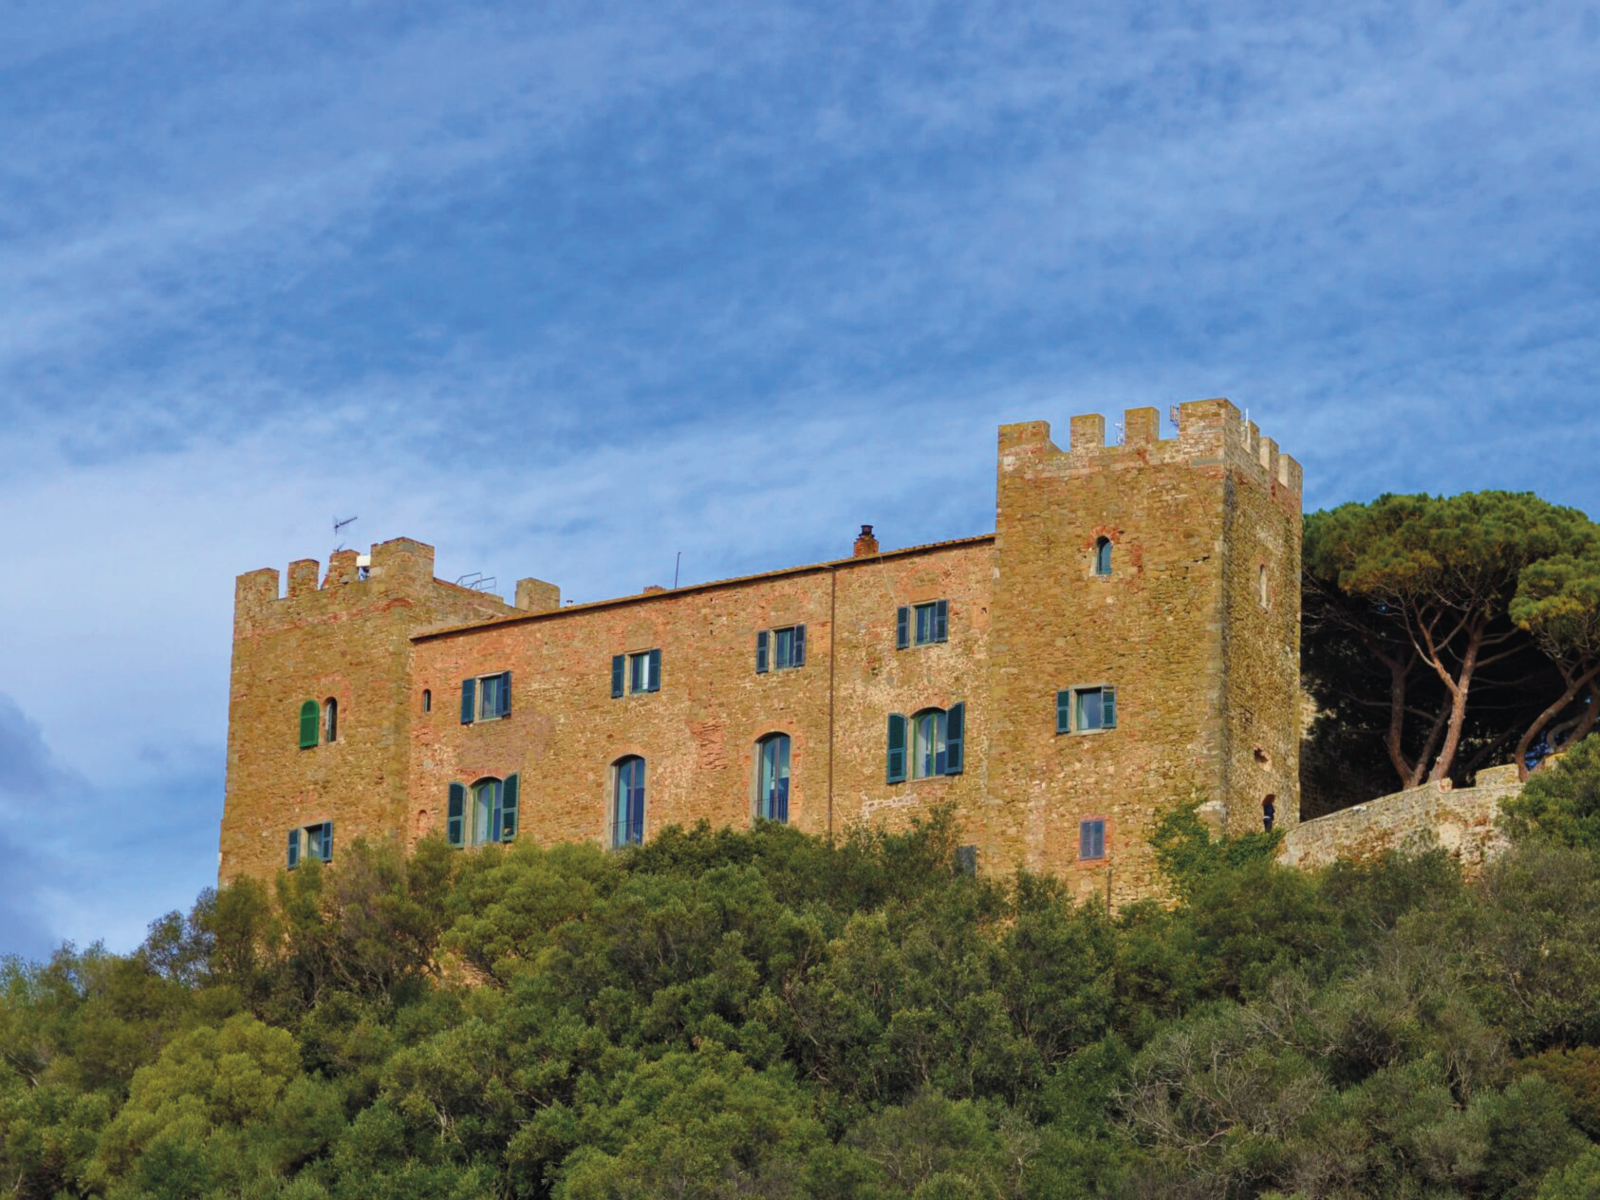 Aragonese Castle in Castiglione della Pescaia